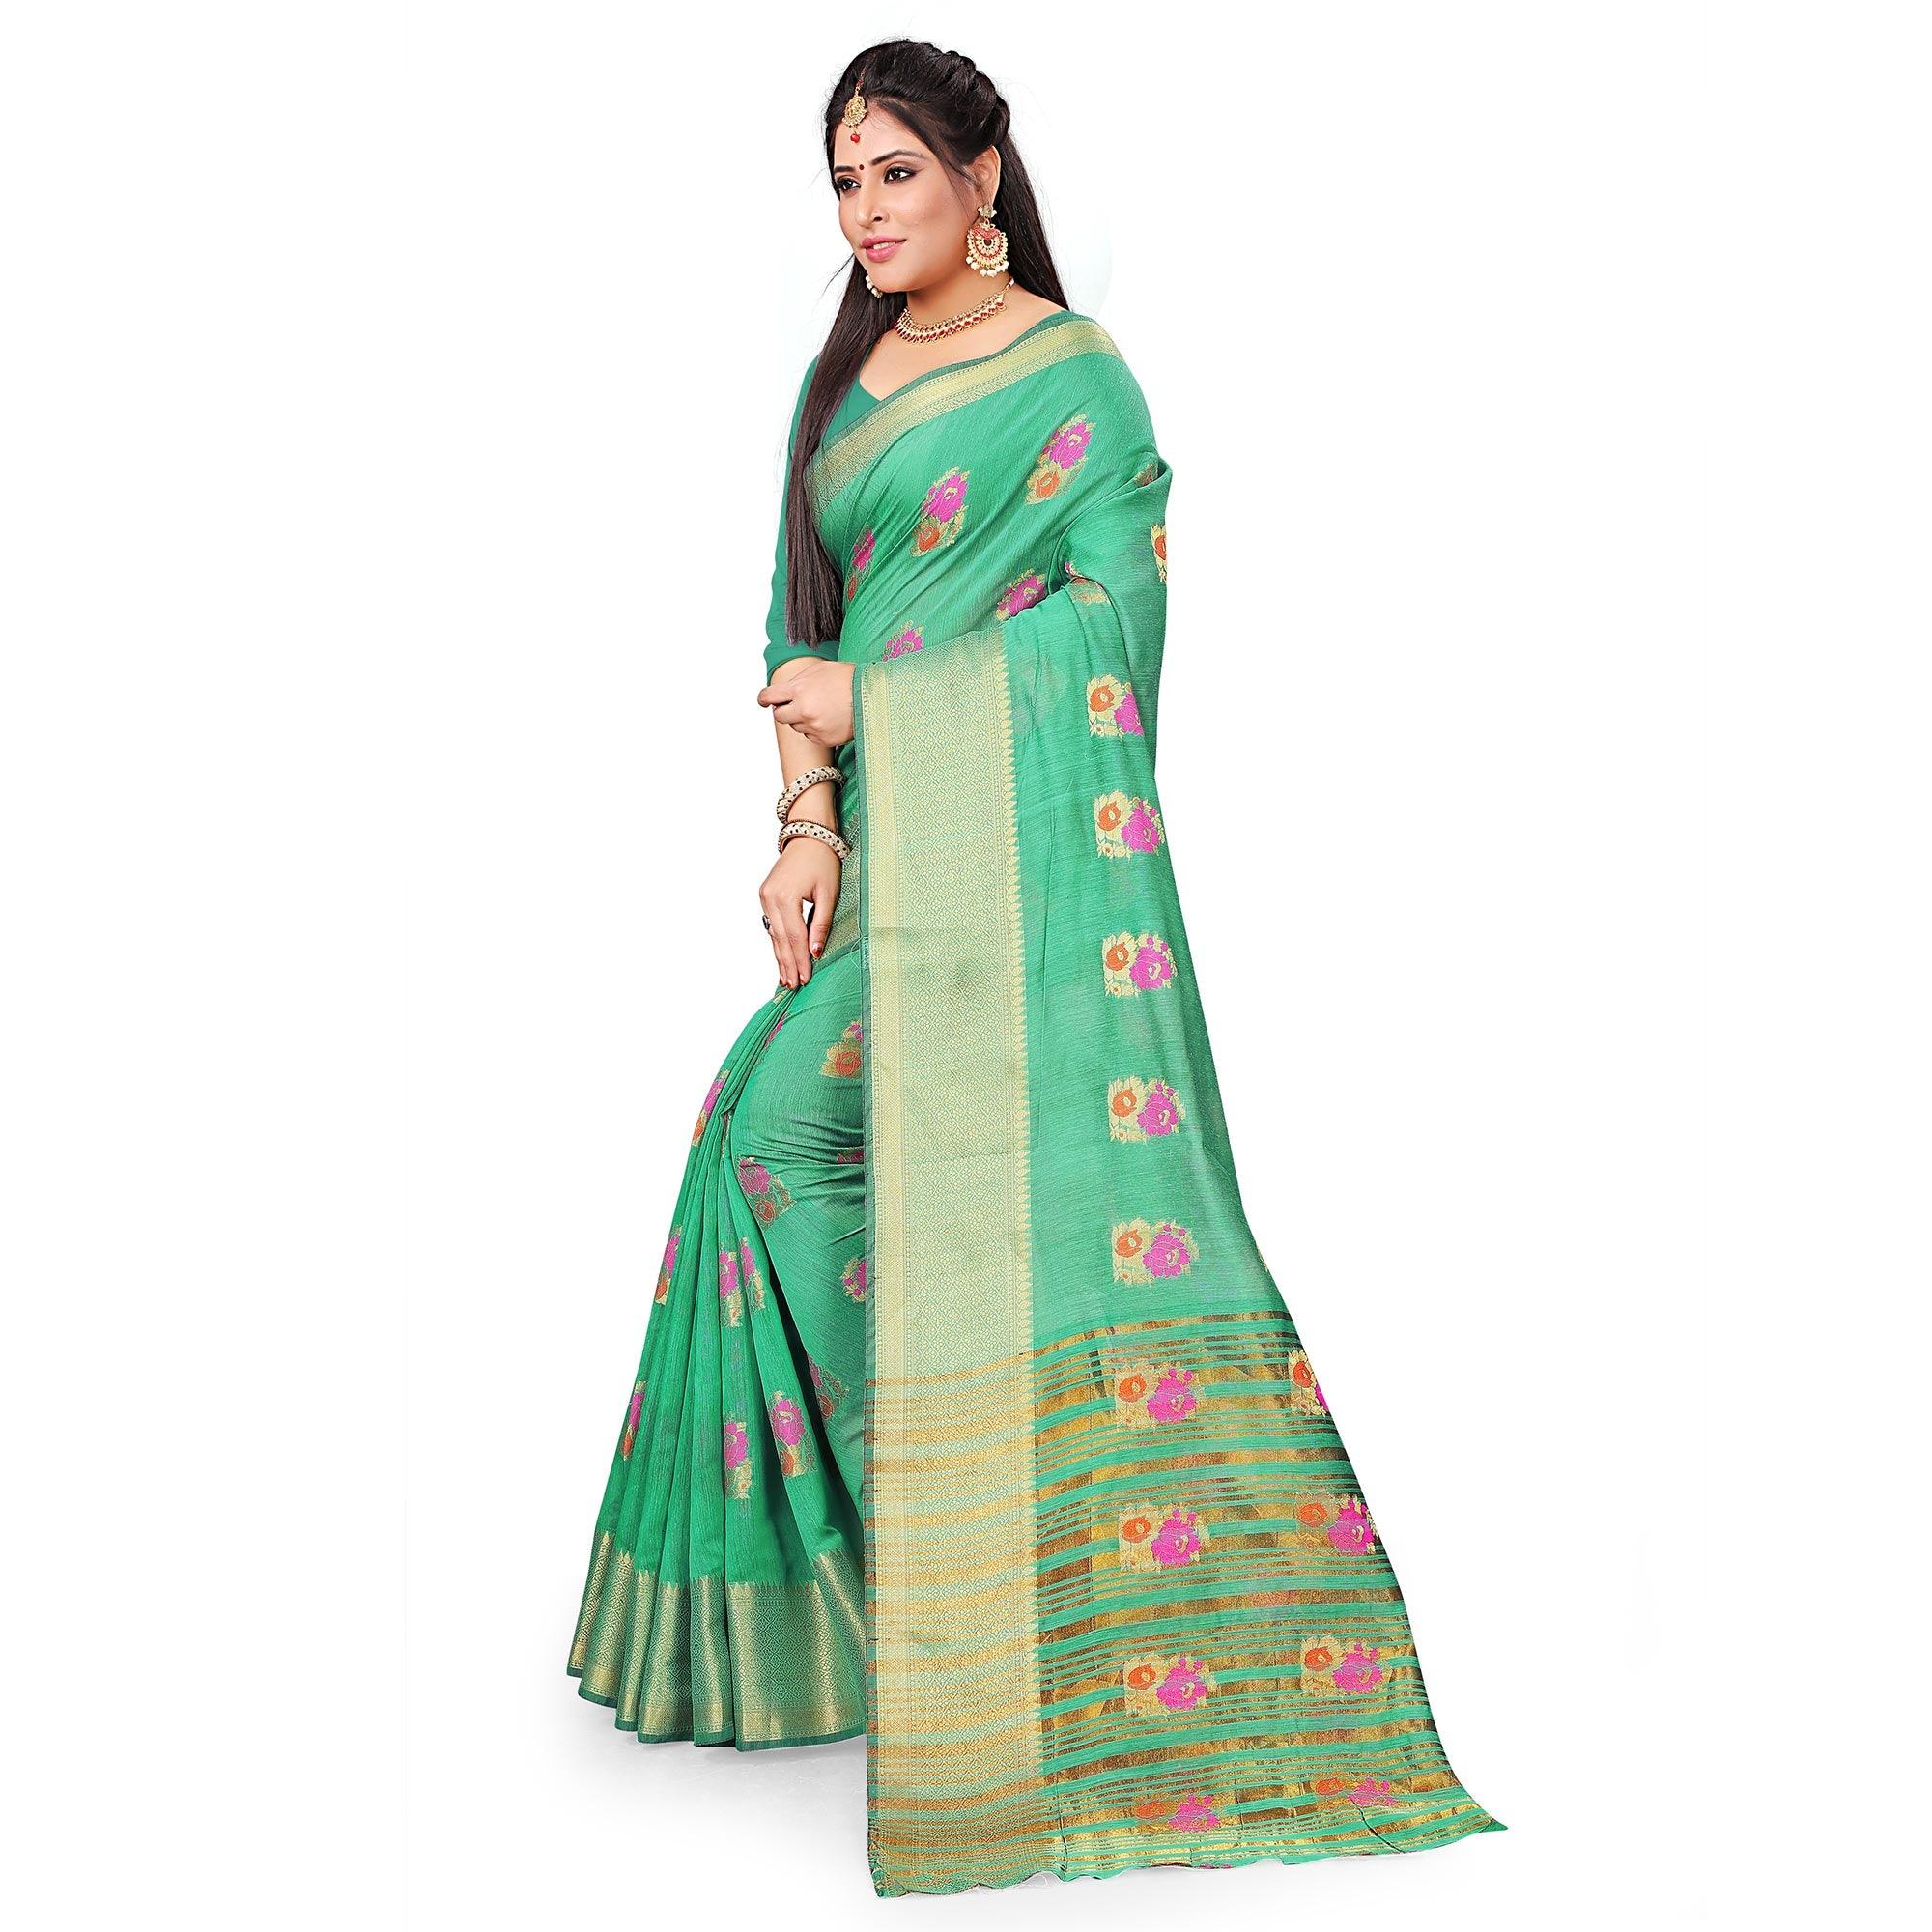 Delightful Green Colored Festive Wear Woven Cotton Silk Saree - Peachmode